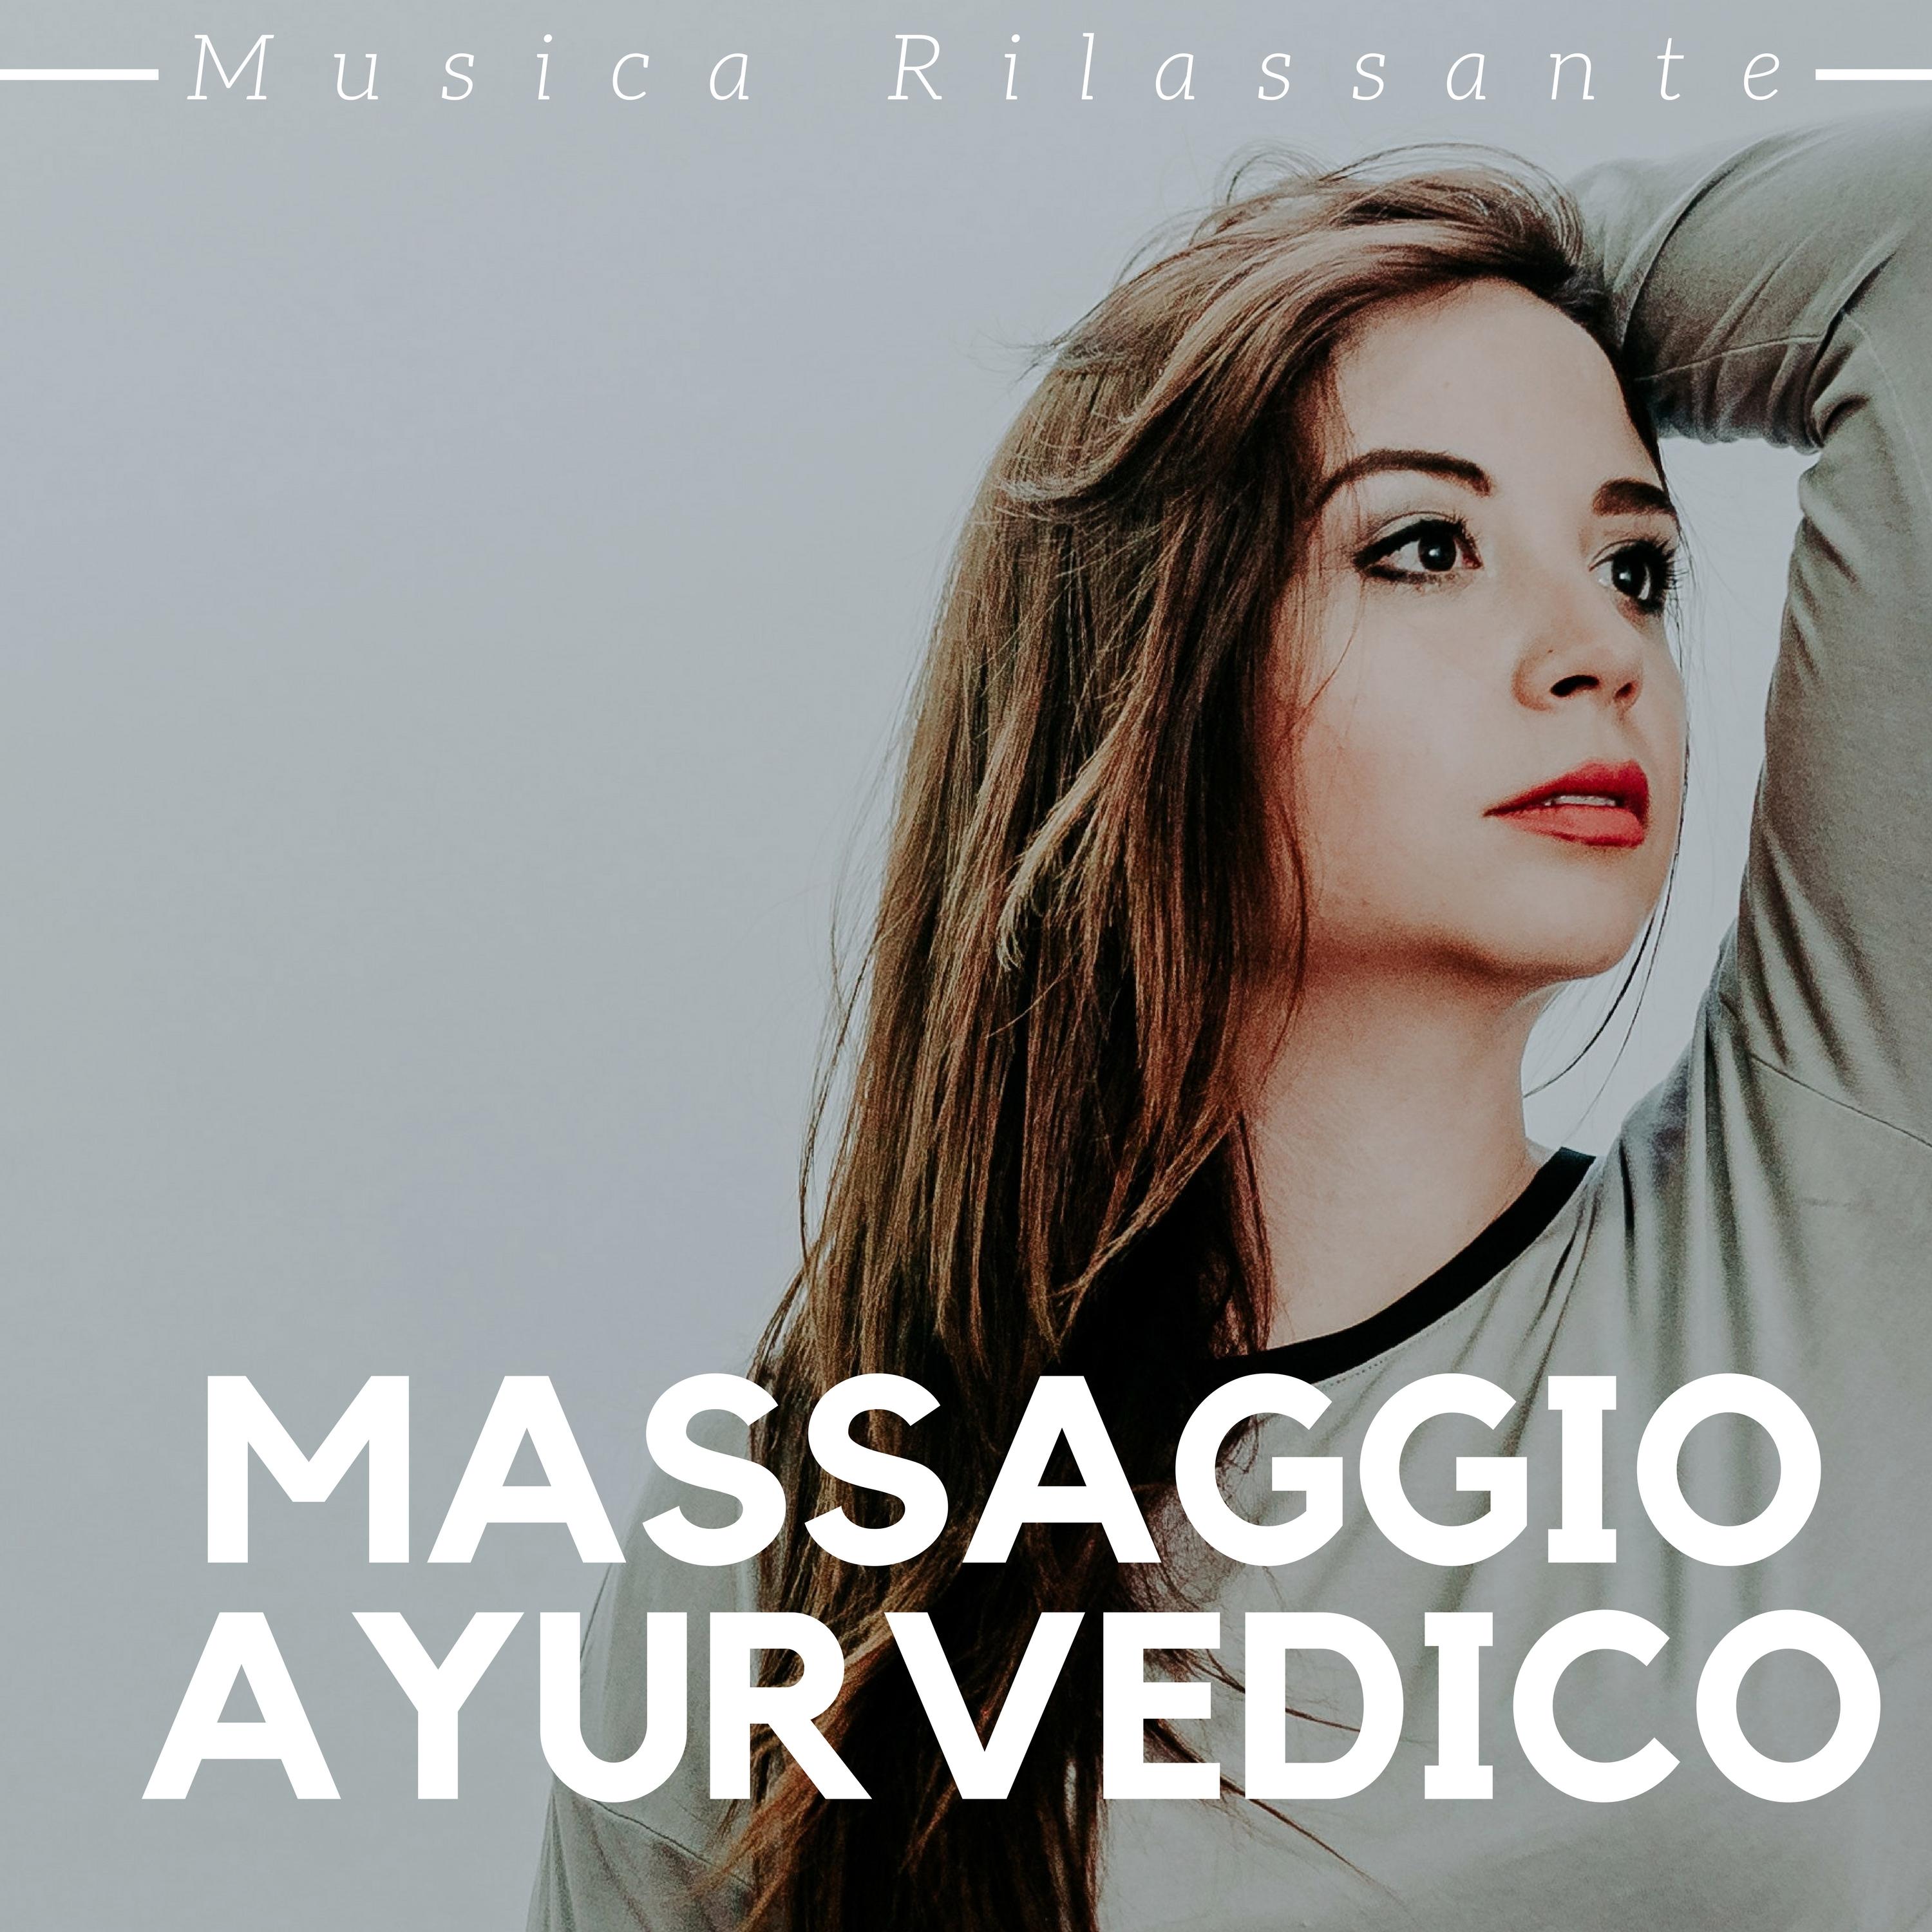 Massaggio Ayurvedico - Musica Rilassante di Sottofondo per Ristabilire l'Equilibrio tra Mente e Corpo